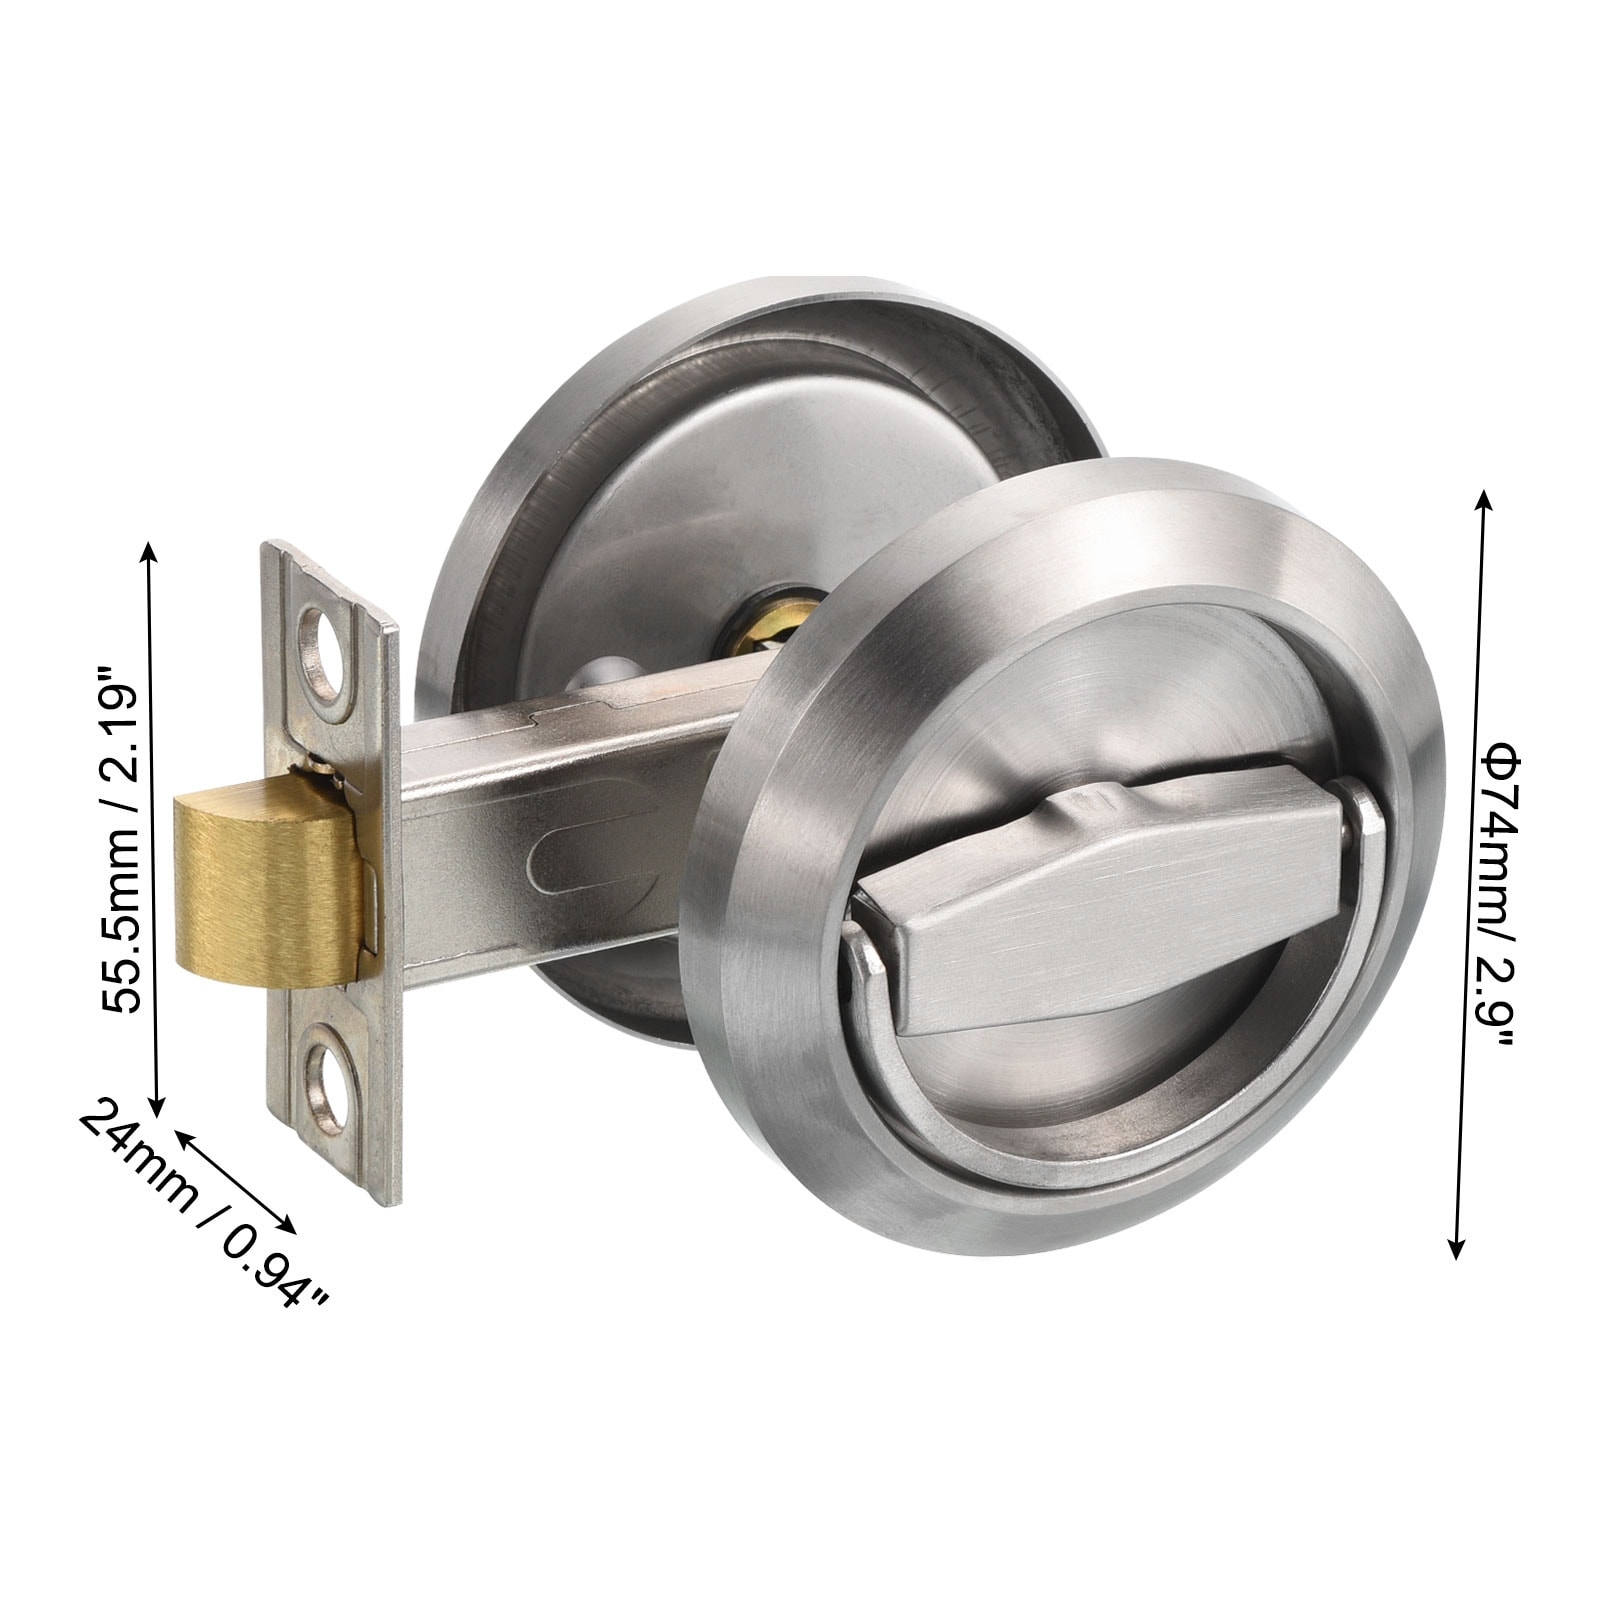 1, 25mm Popular Size Easy Open Metal Steel Key Rings 